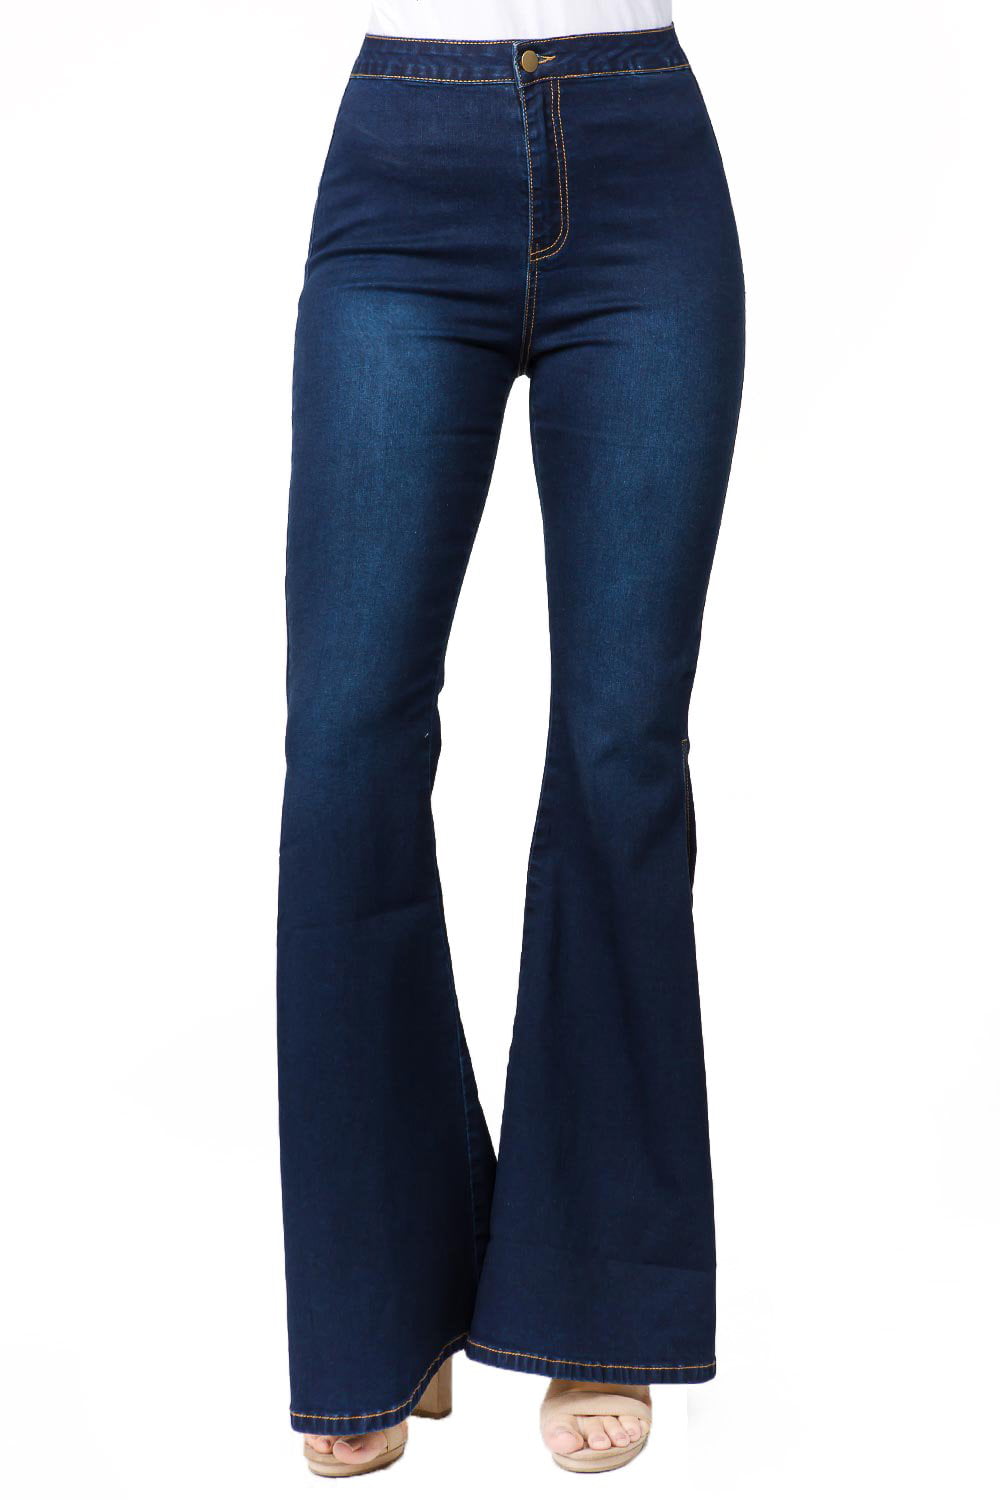 YDX Bazi Flare Bell Bottom Jeans for Juniors Slit high waisted Skinny ...